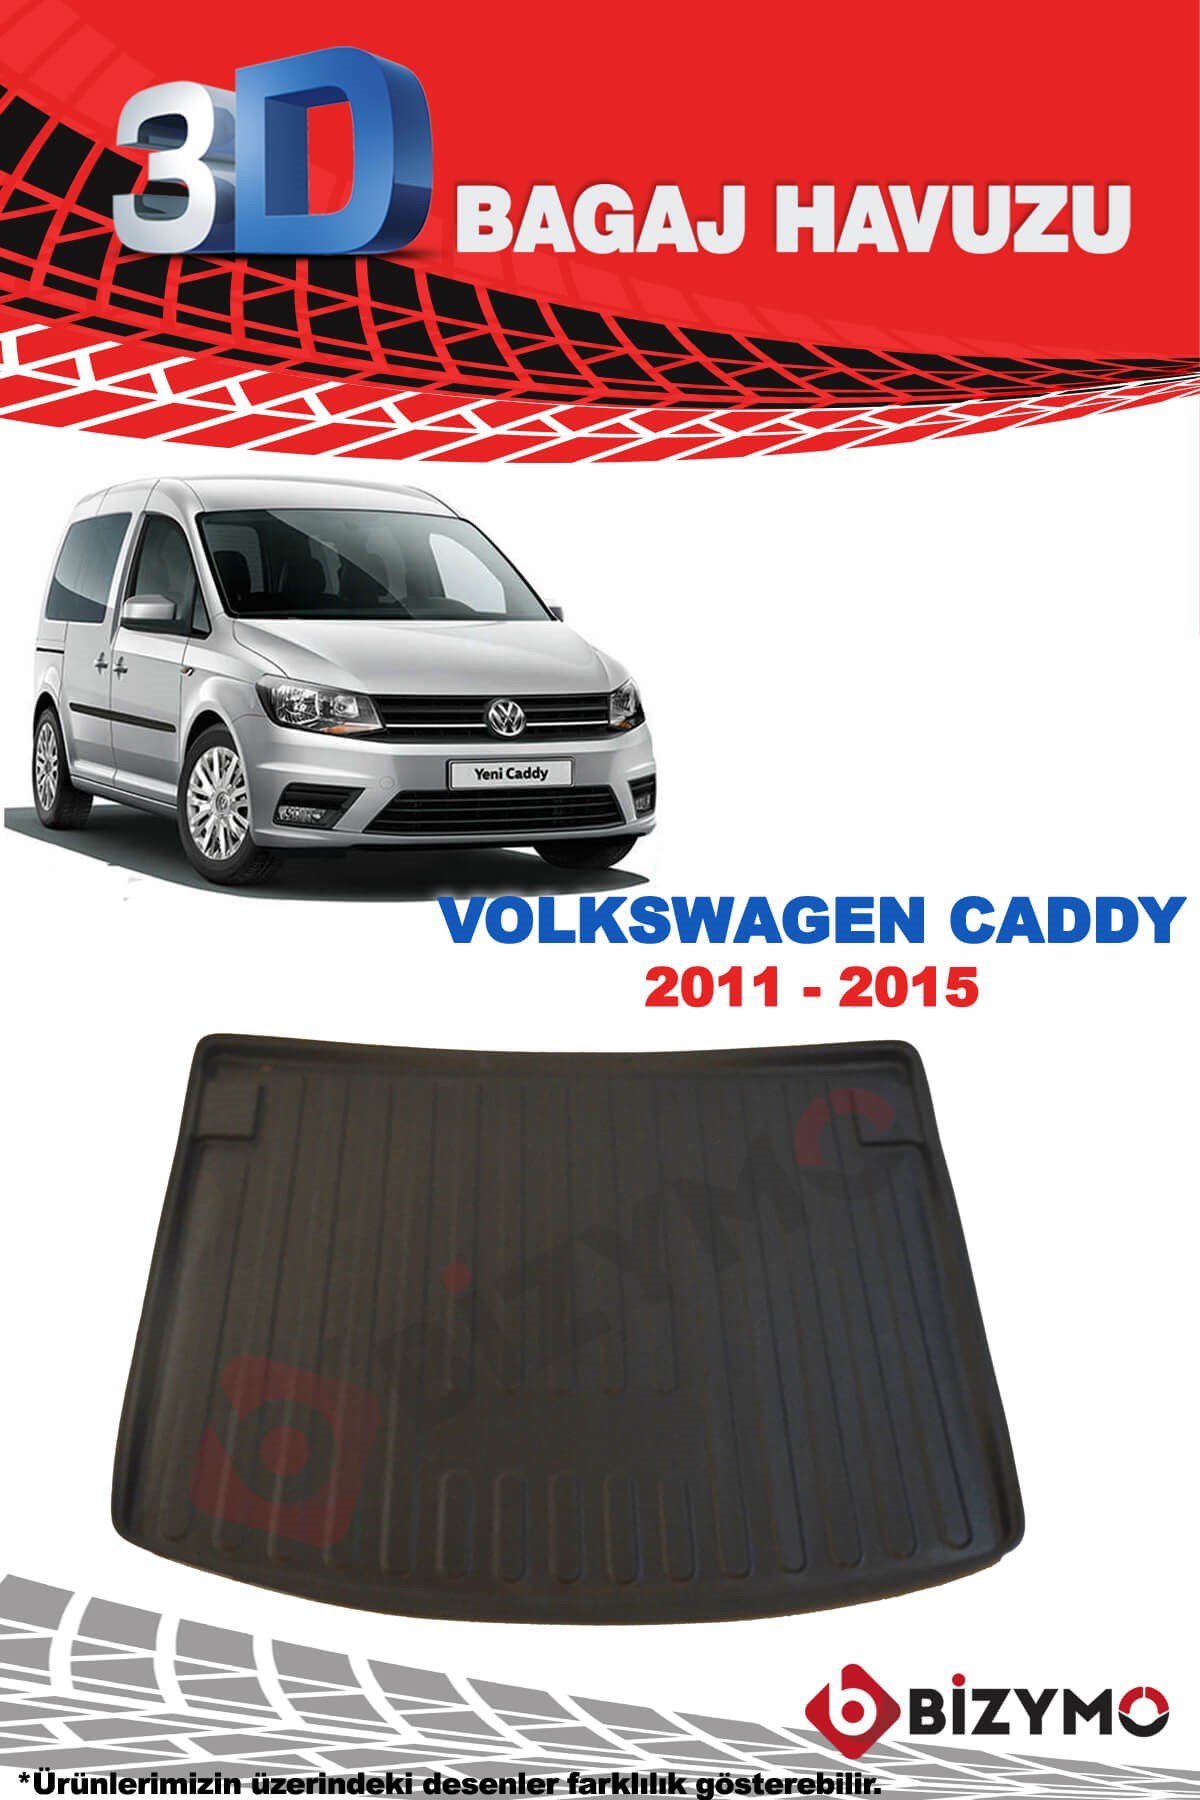 Volkswagen Caddy 2015 Ve Sonrası 3D Bagaj Havuzu Bizymo - Bizim Oto